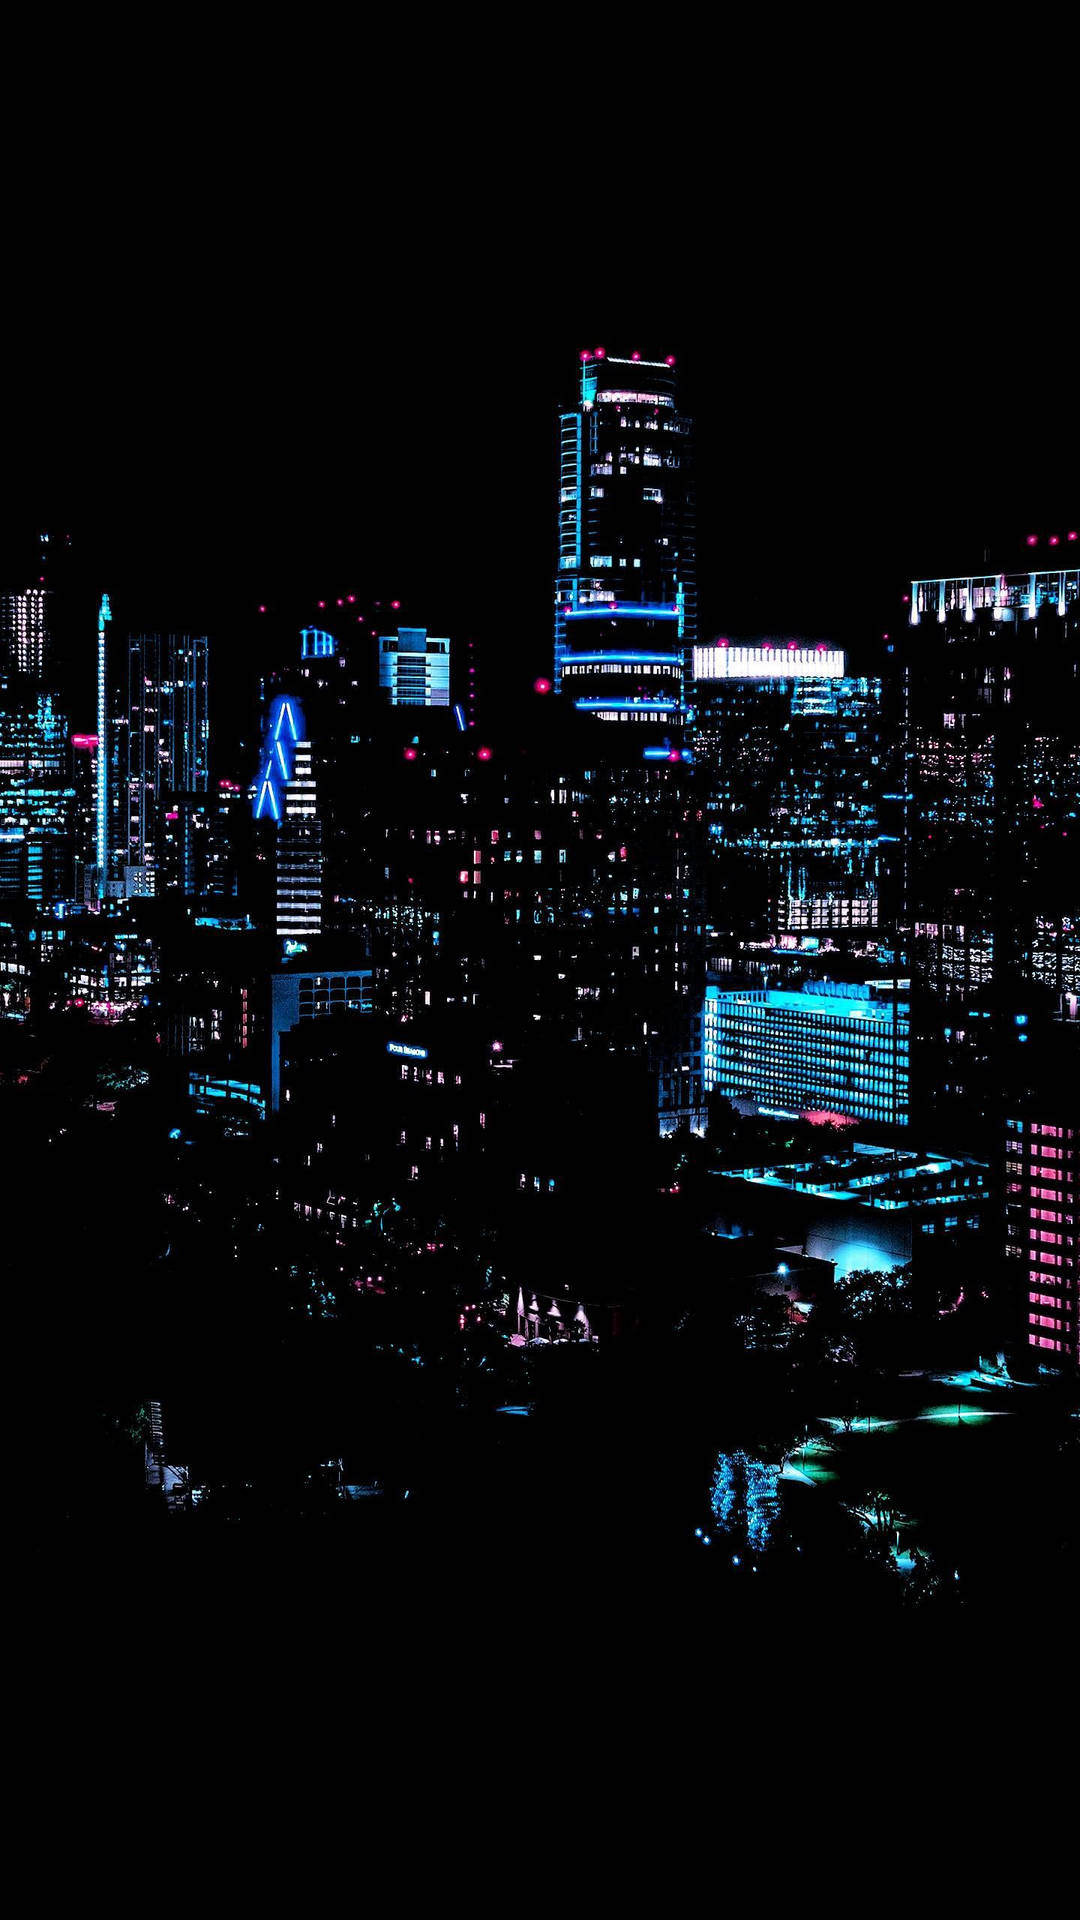 Byen skyline belyst i et mystisk lys. Wallpaper